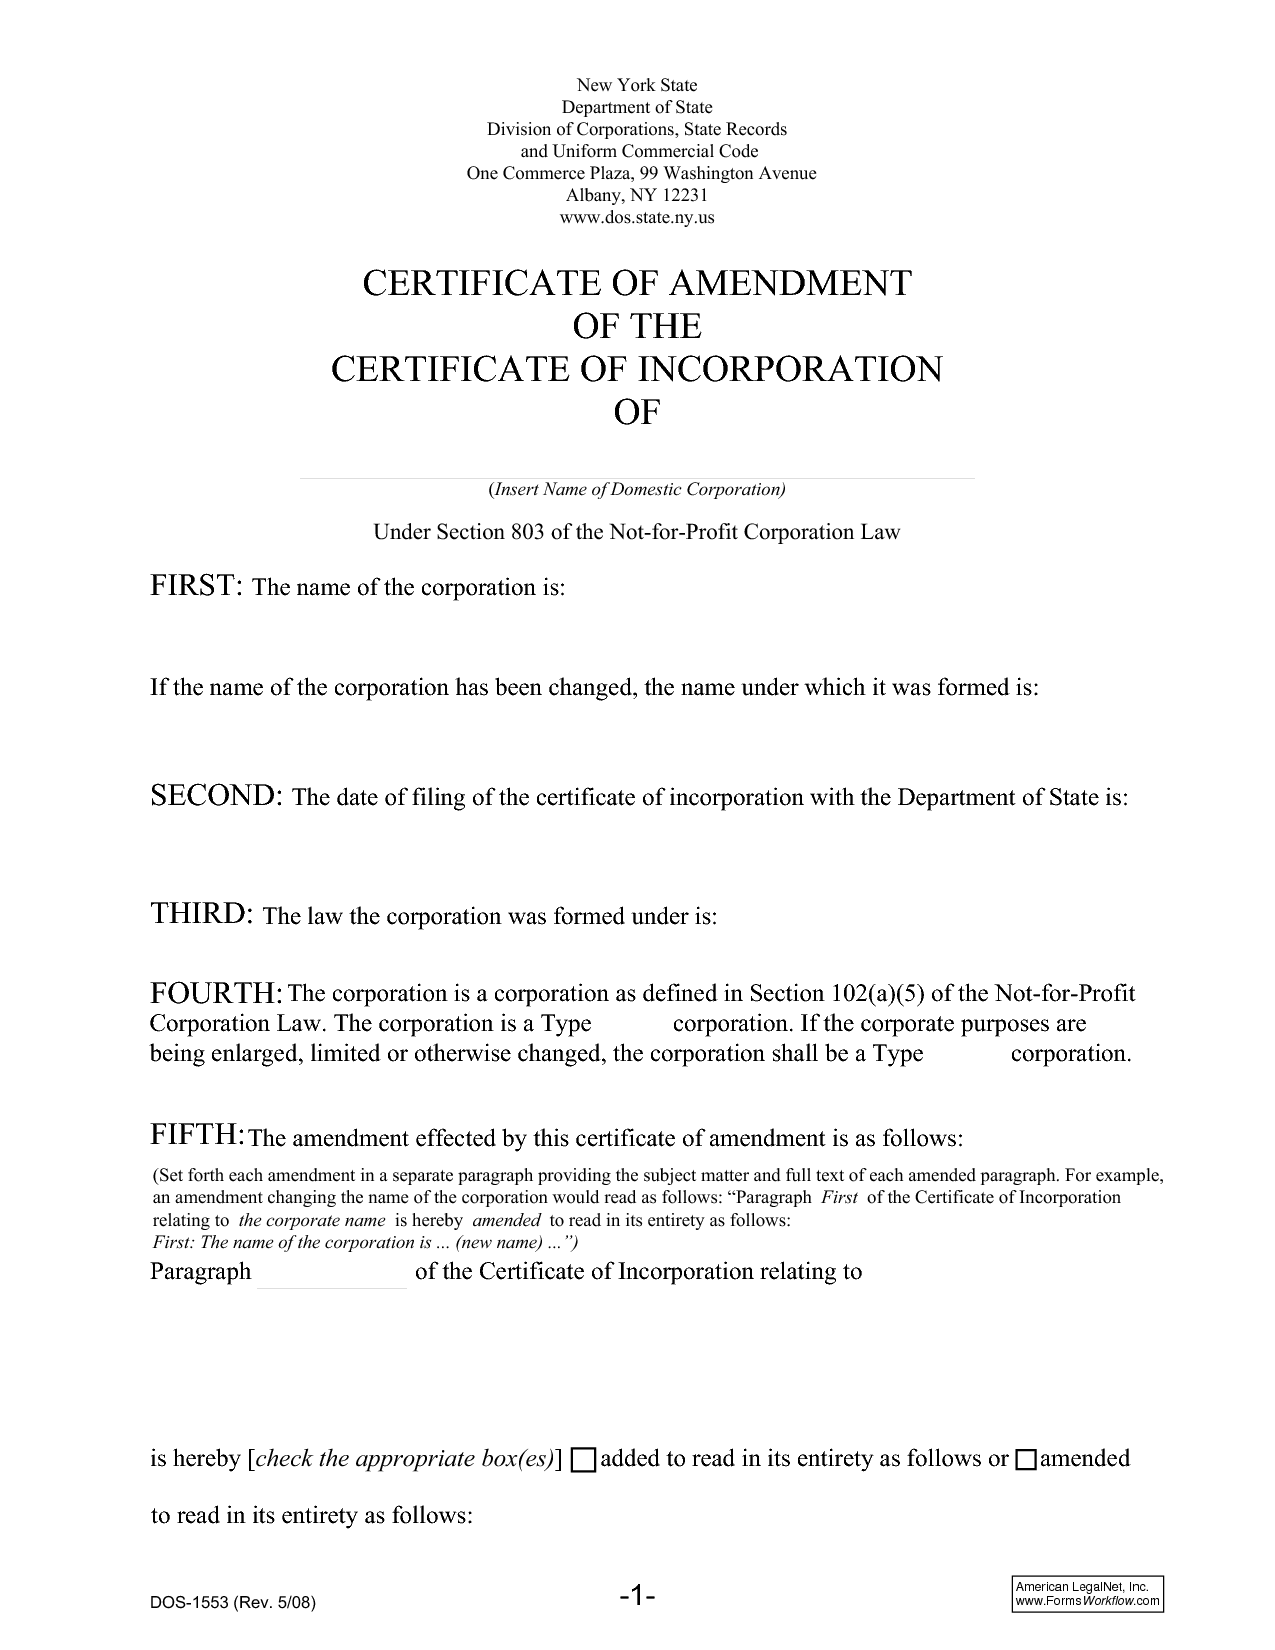 Certificate of Amendment Sample